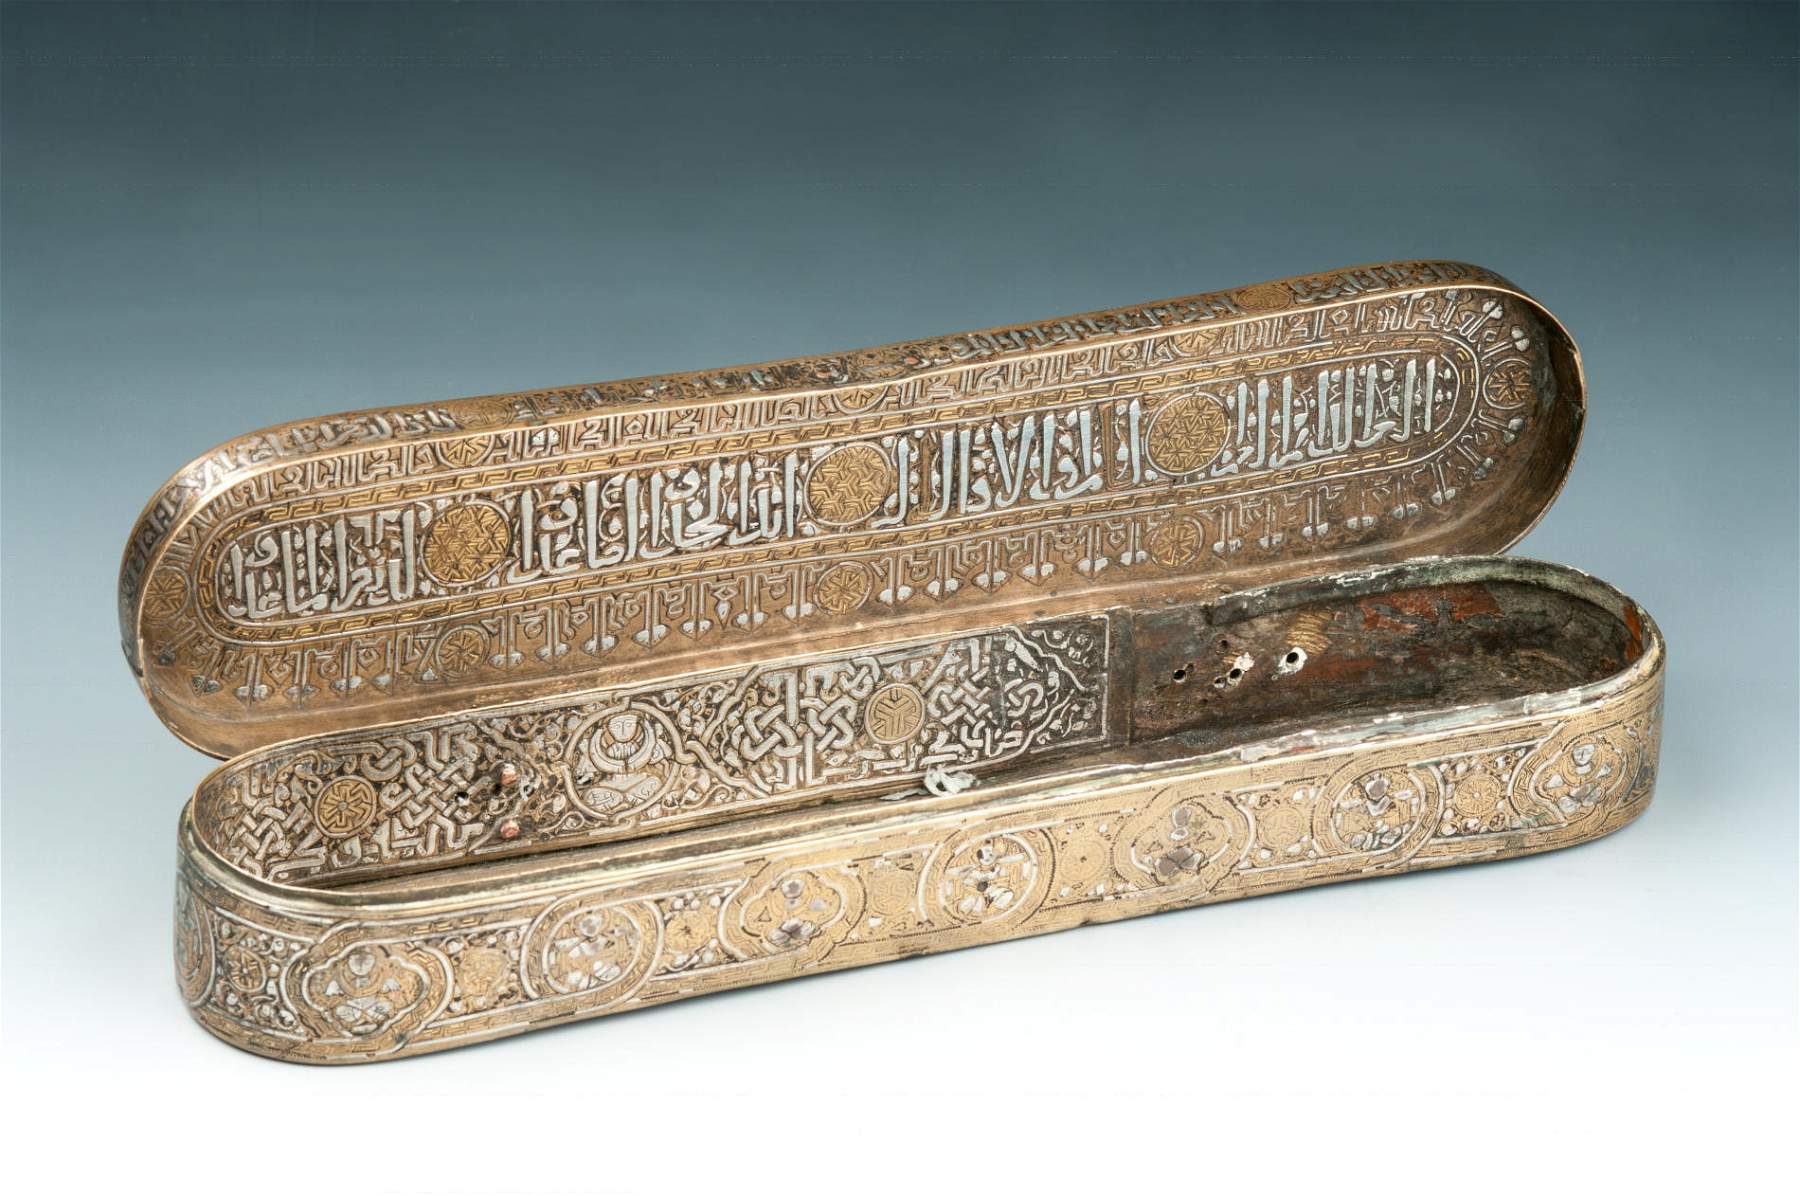 Metalli sovrani: al MAO di Torino in mostra l'arte in metallo dell'Islam medievale